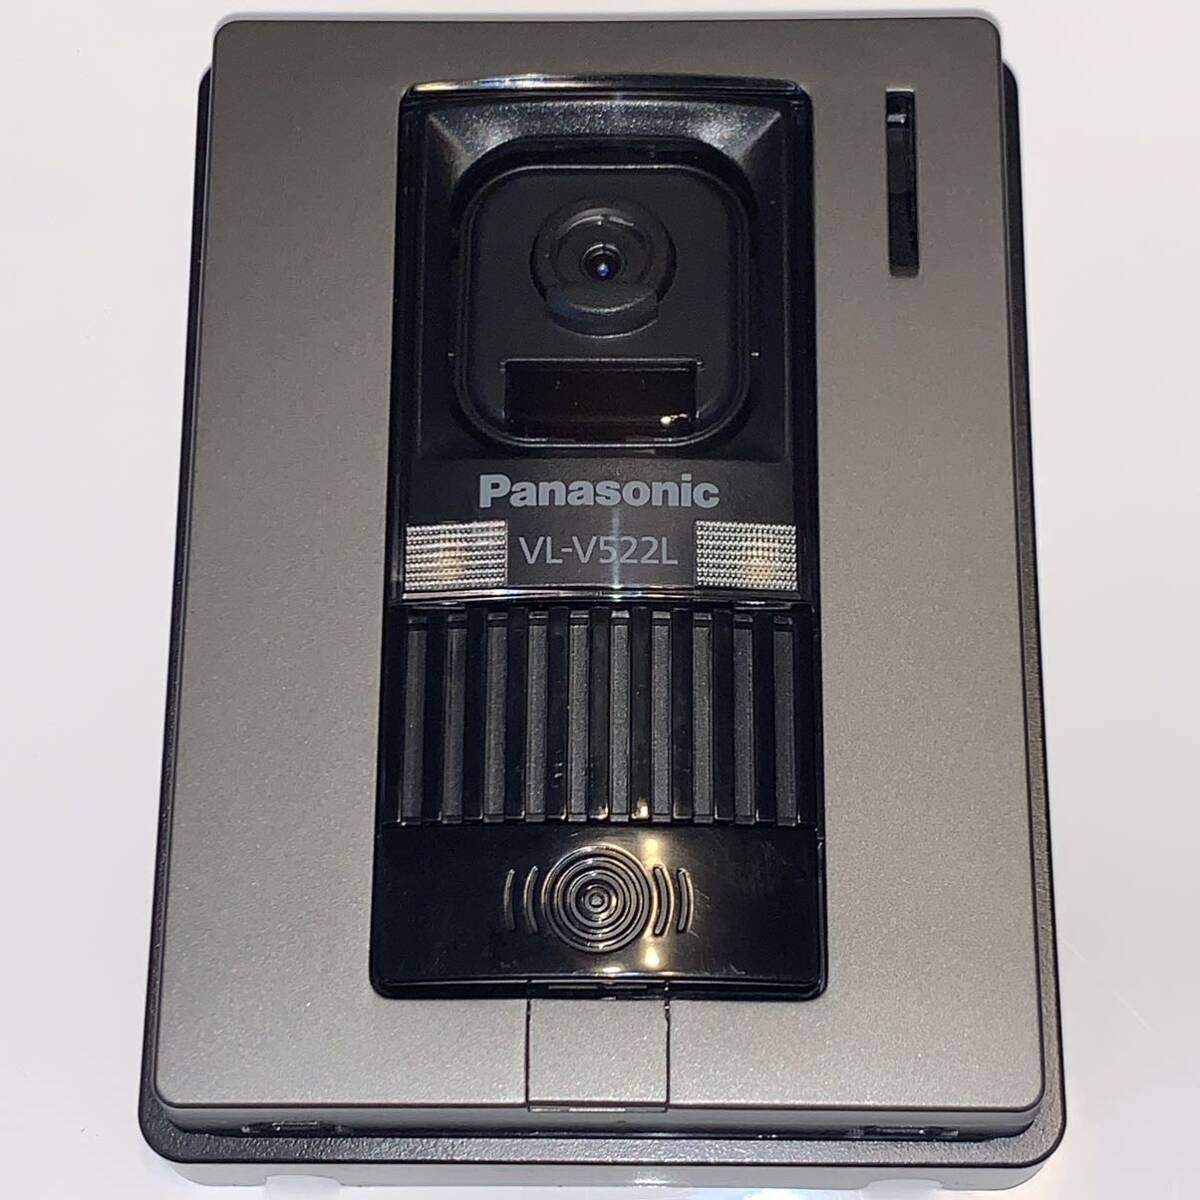 美品 VL-V522L-S パナソニック パナソニックドアホン 玄関子機 Panasonic インターホン カラーカメラ玄関子機の画像1